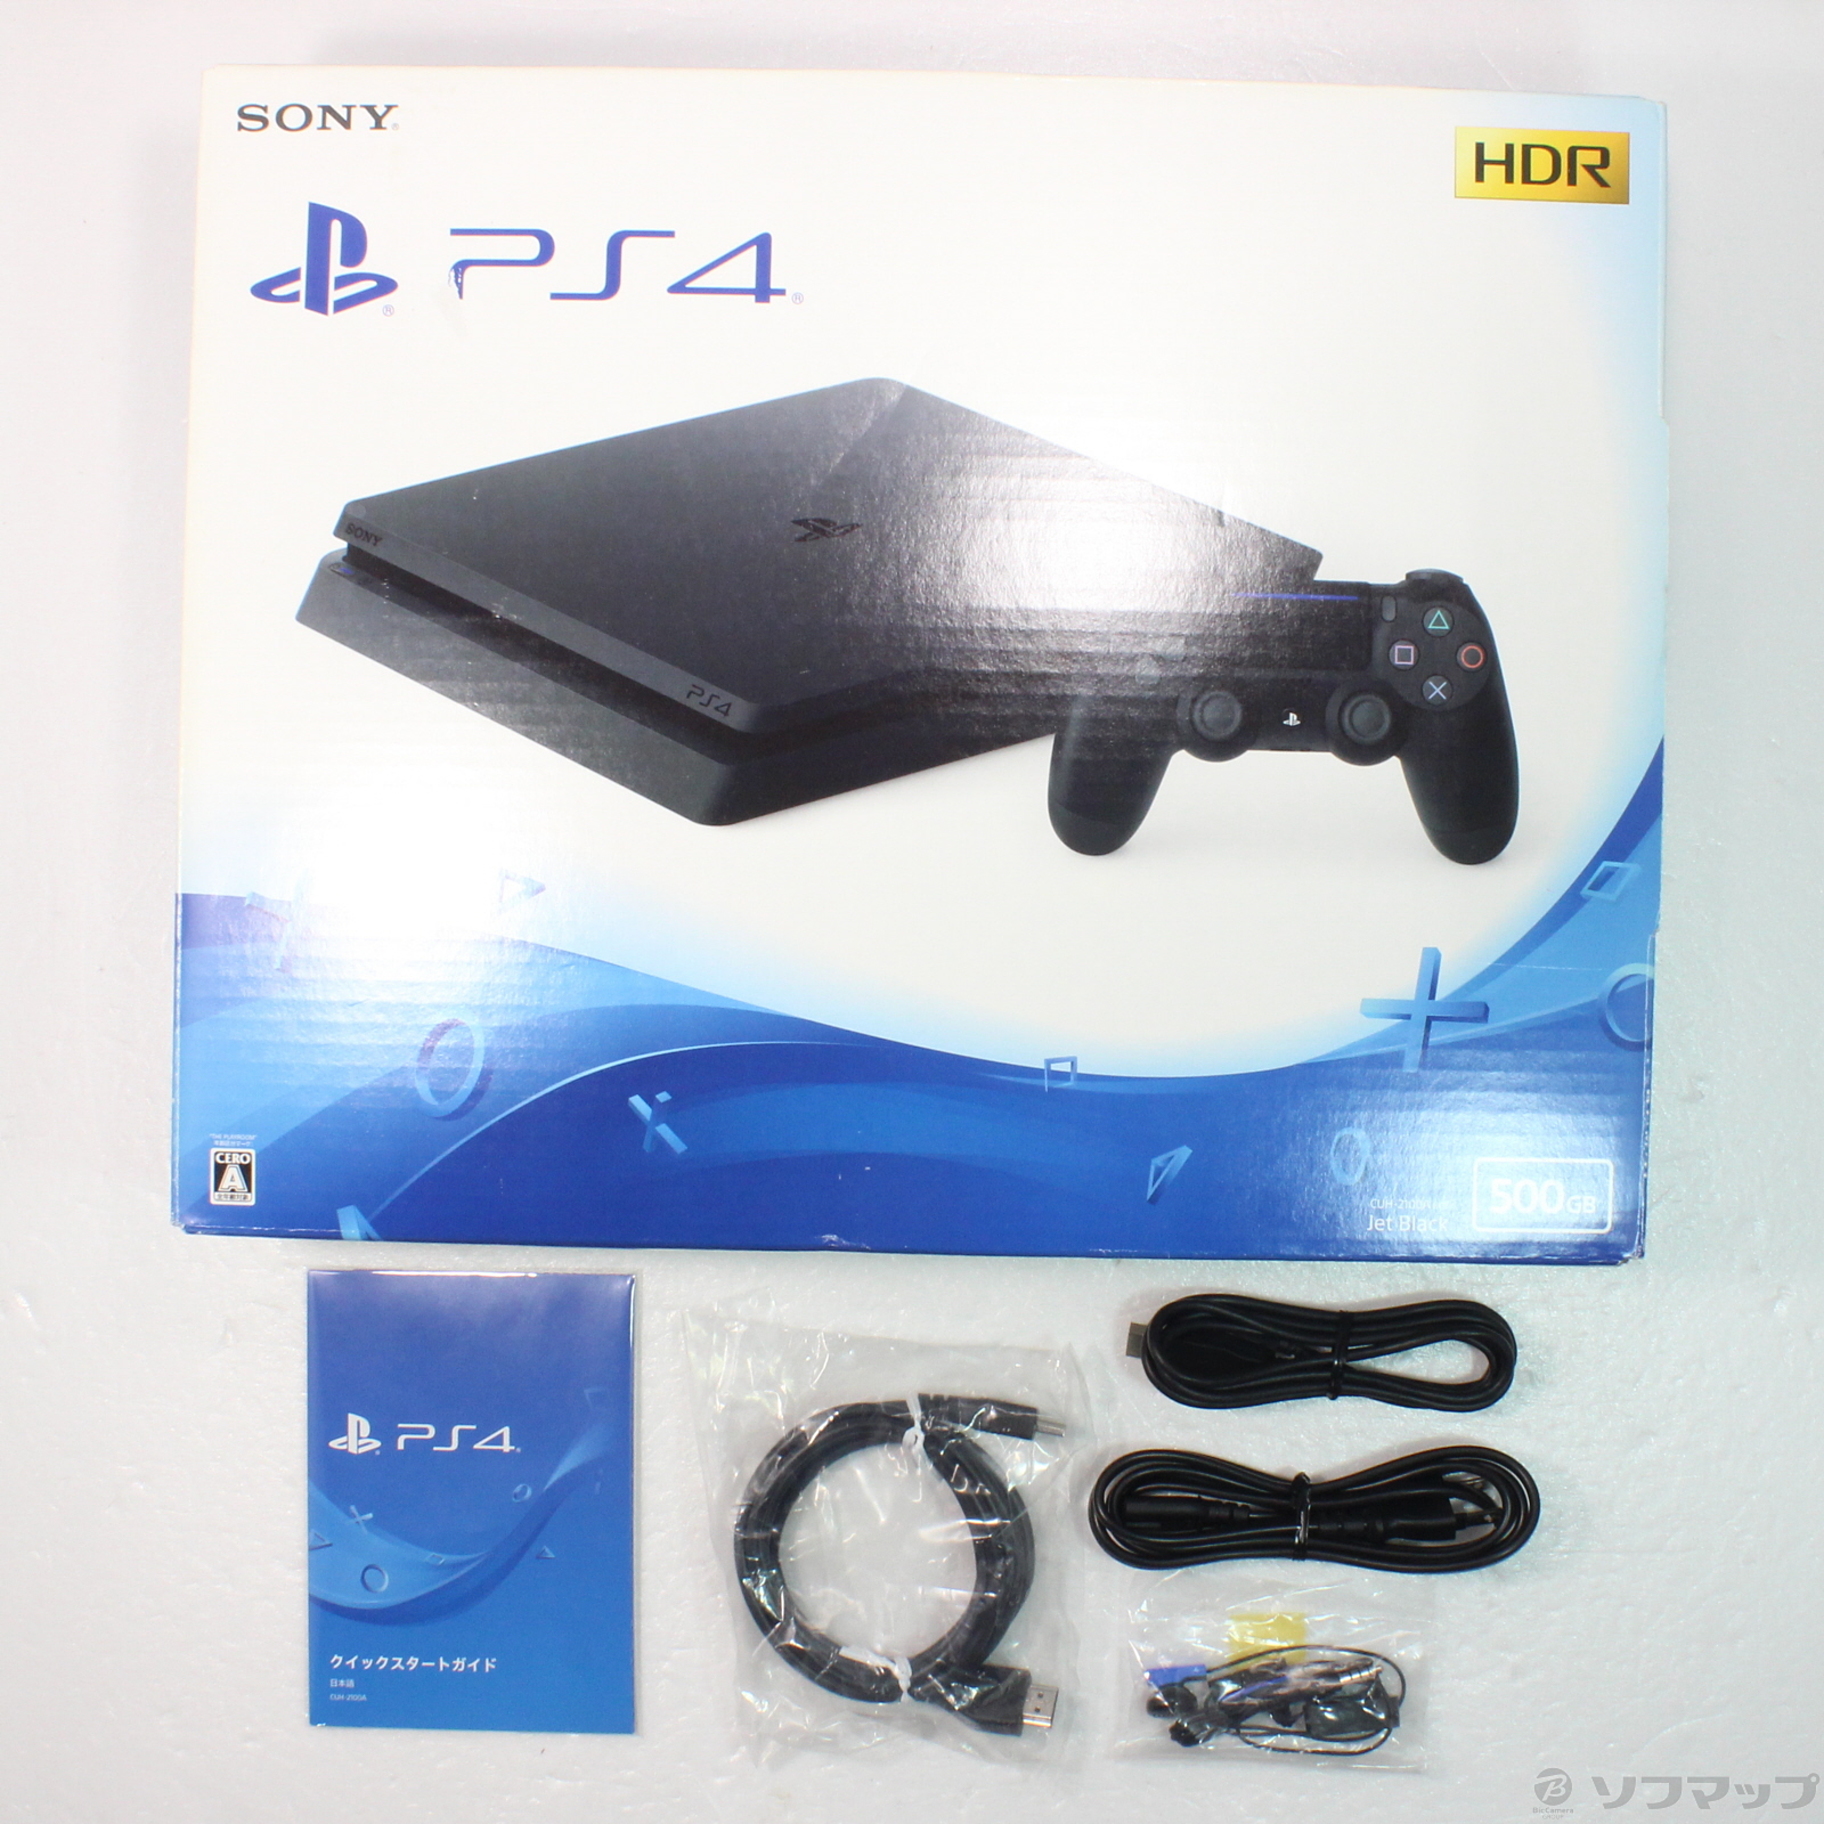 【激安大阪】PS4 本体 セット 500GB ブラック SONY PlayStation4 CUH-2000A 動作確認済 箱 コントローラー DC07-344jy/G4 PS4本体